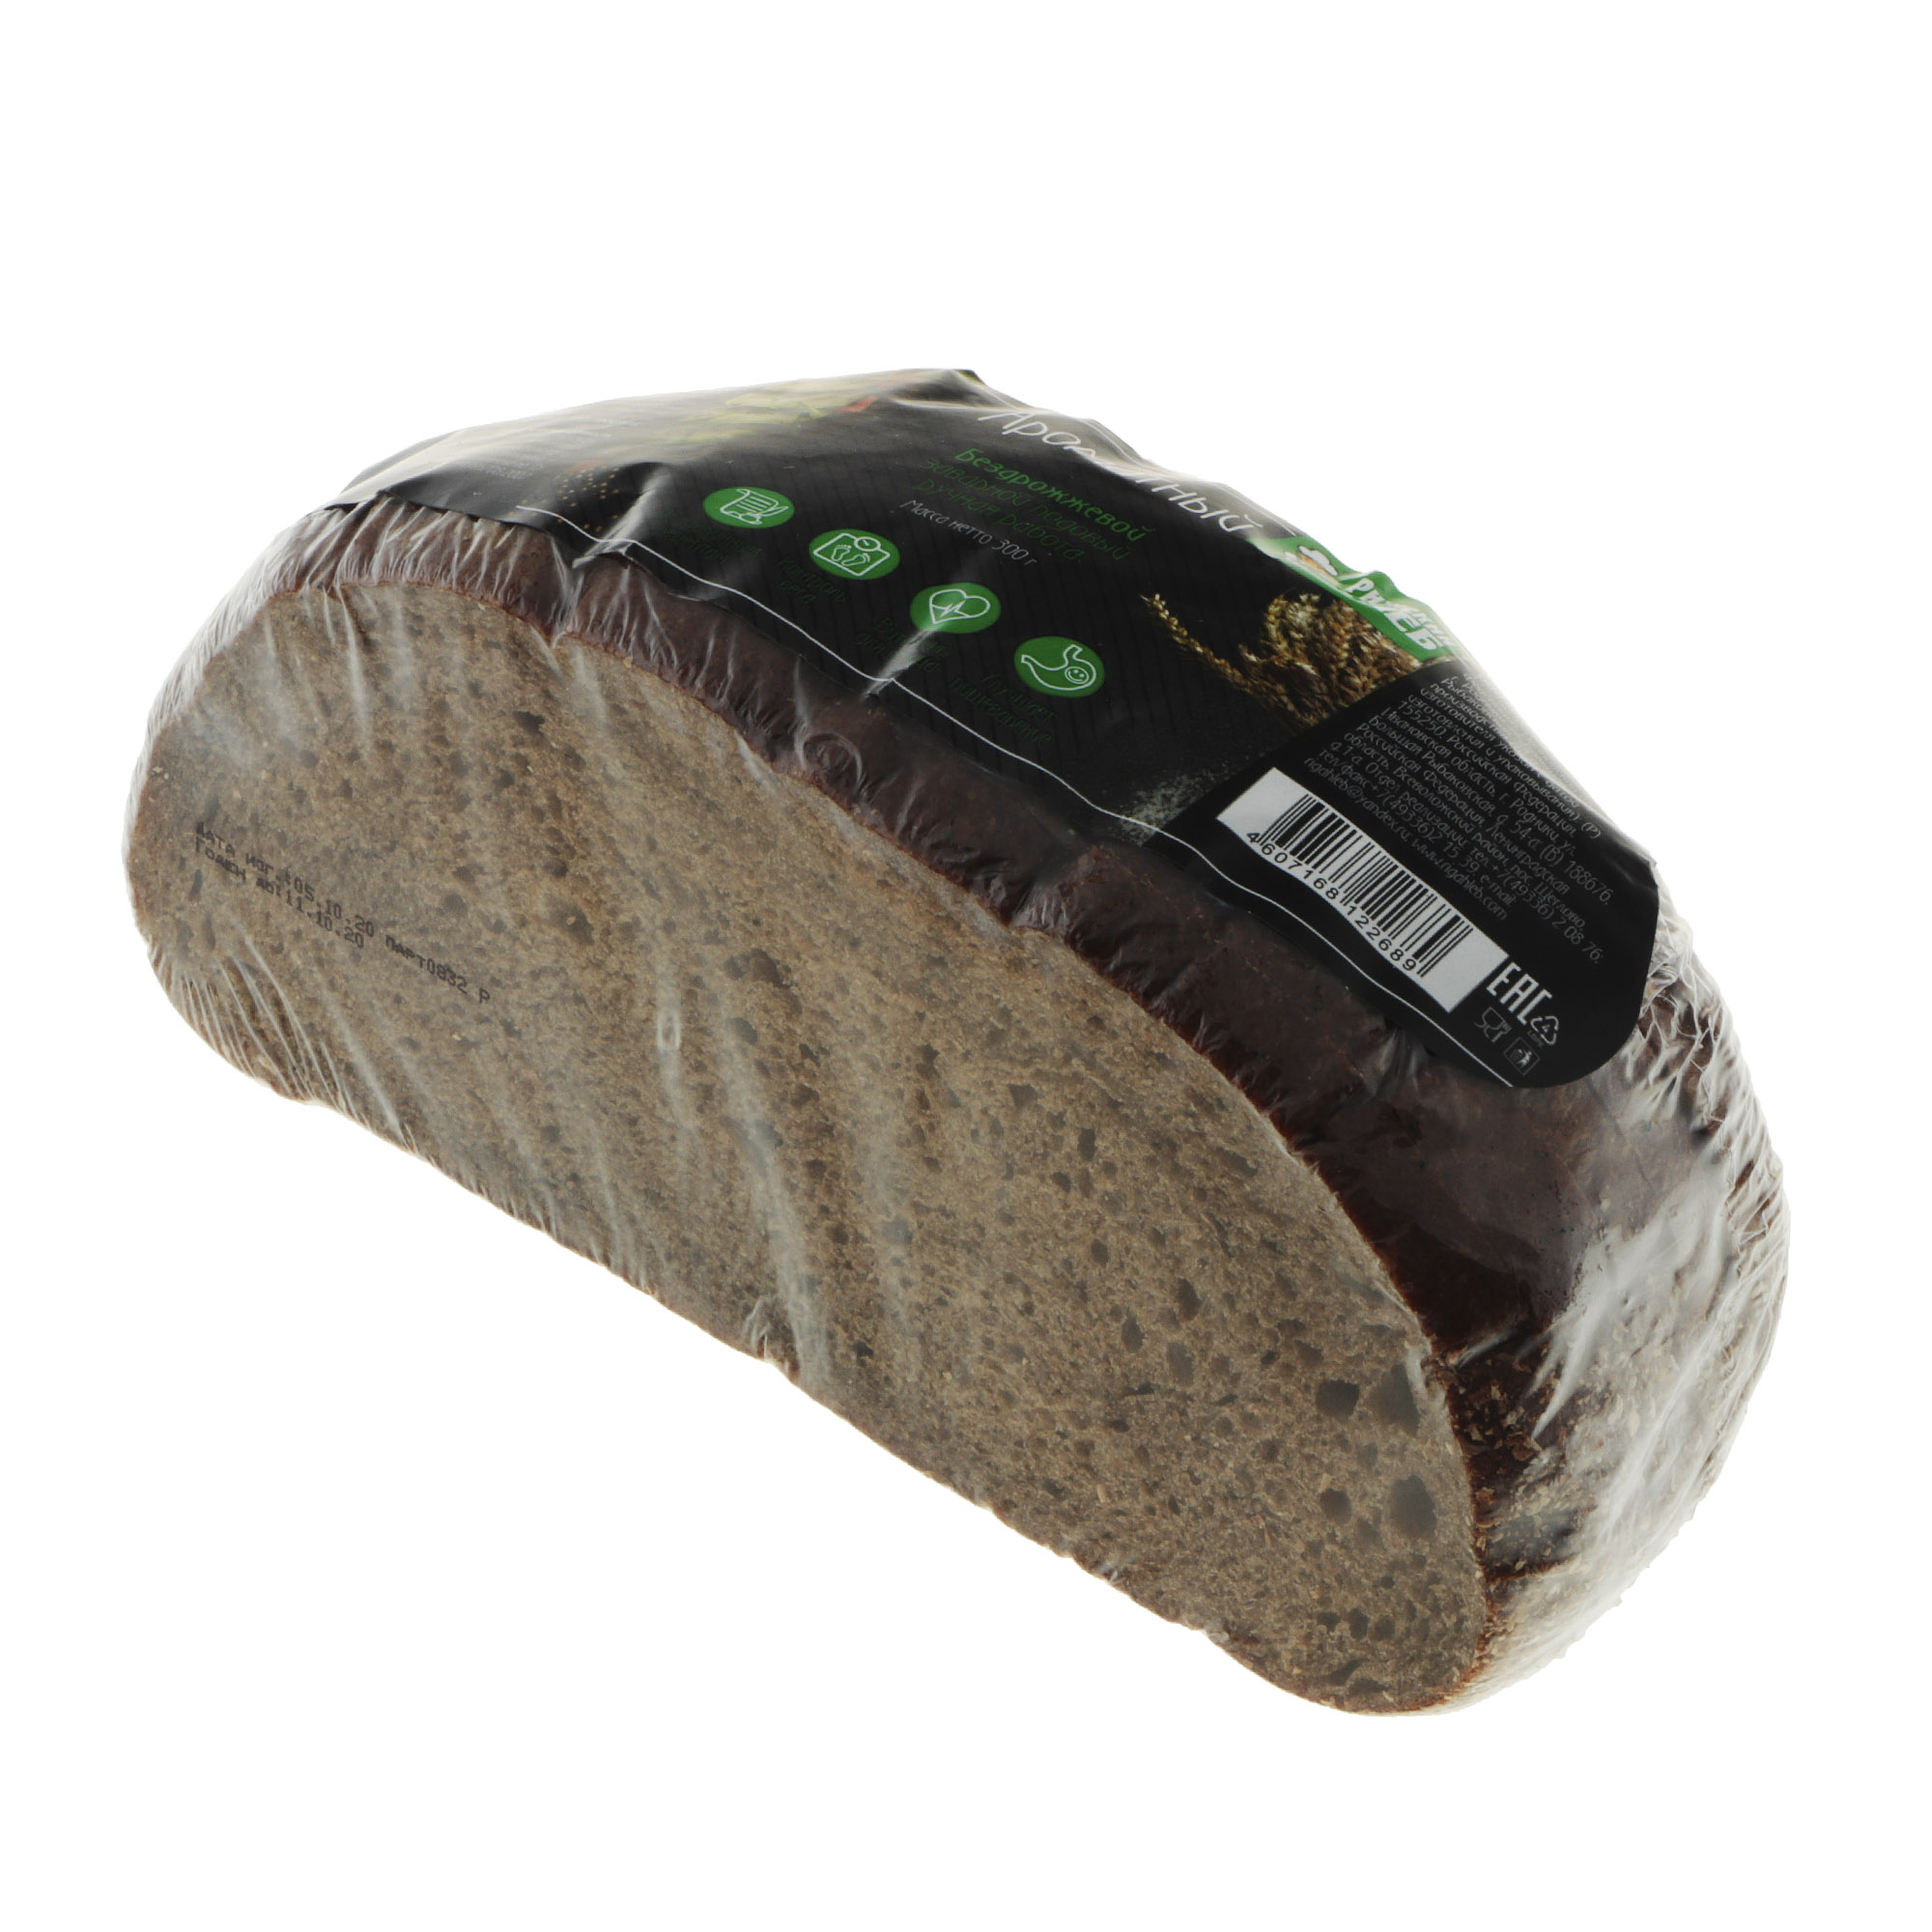 Хлеб Рижский хлеб ароматный 300 г хлебцы ржаные цельнозерновые wasa 275 гр